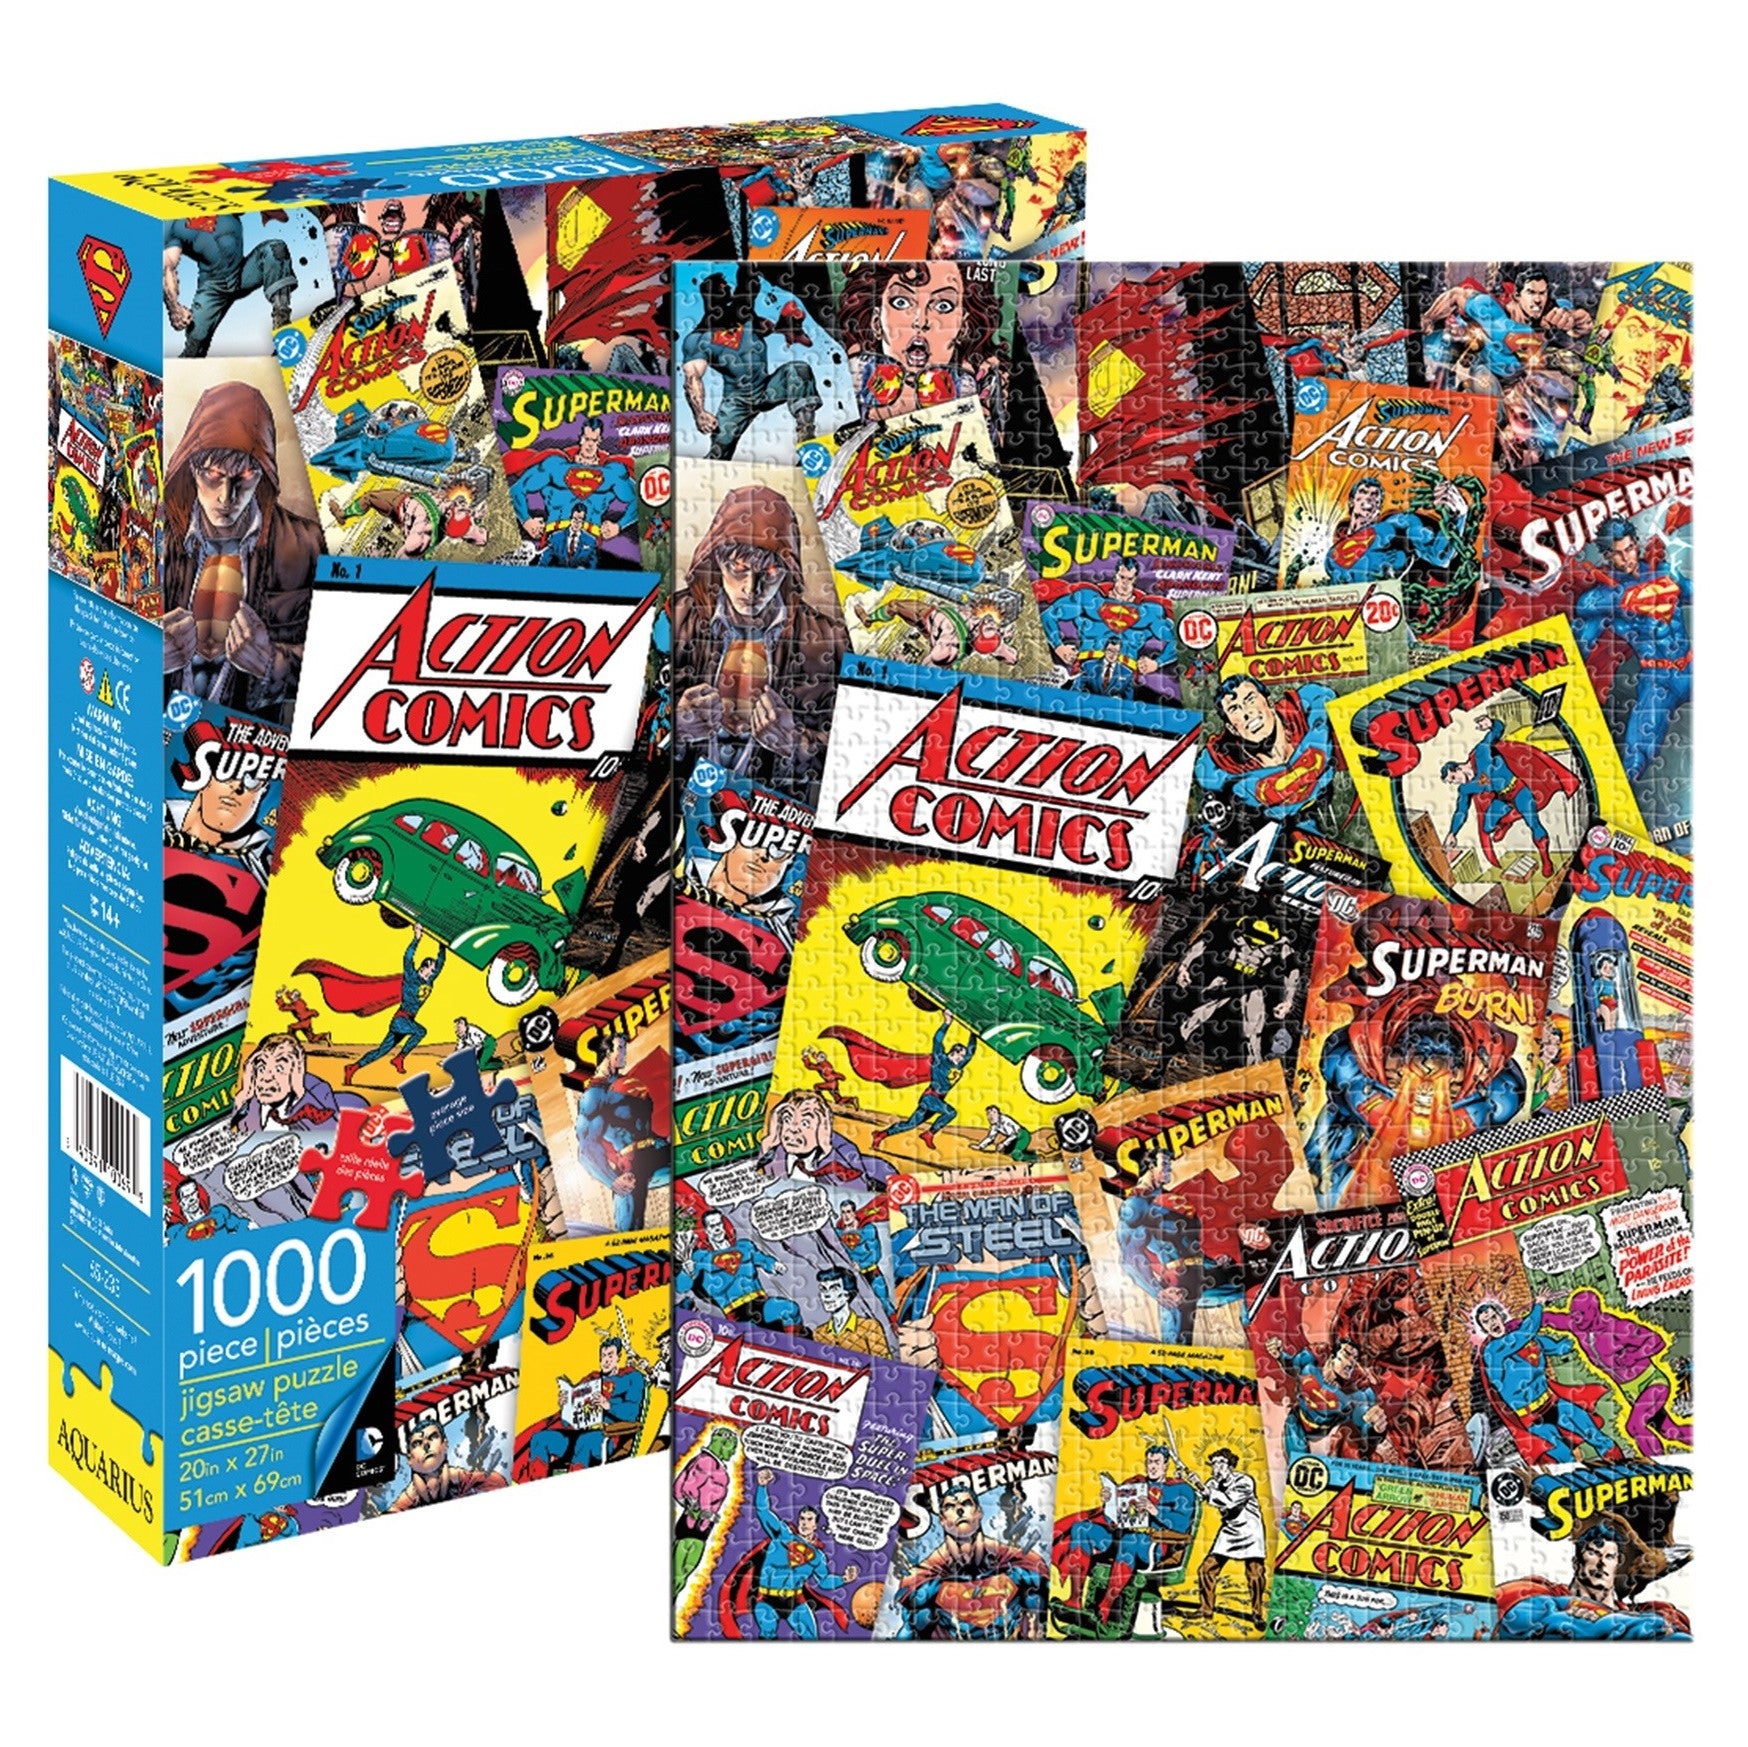 DC Comics Superman Collage Jigsaw Puzzle 1000 pieces